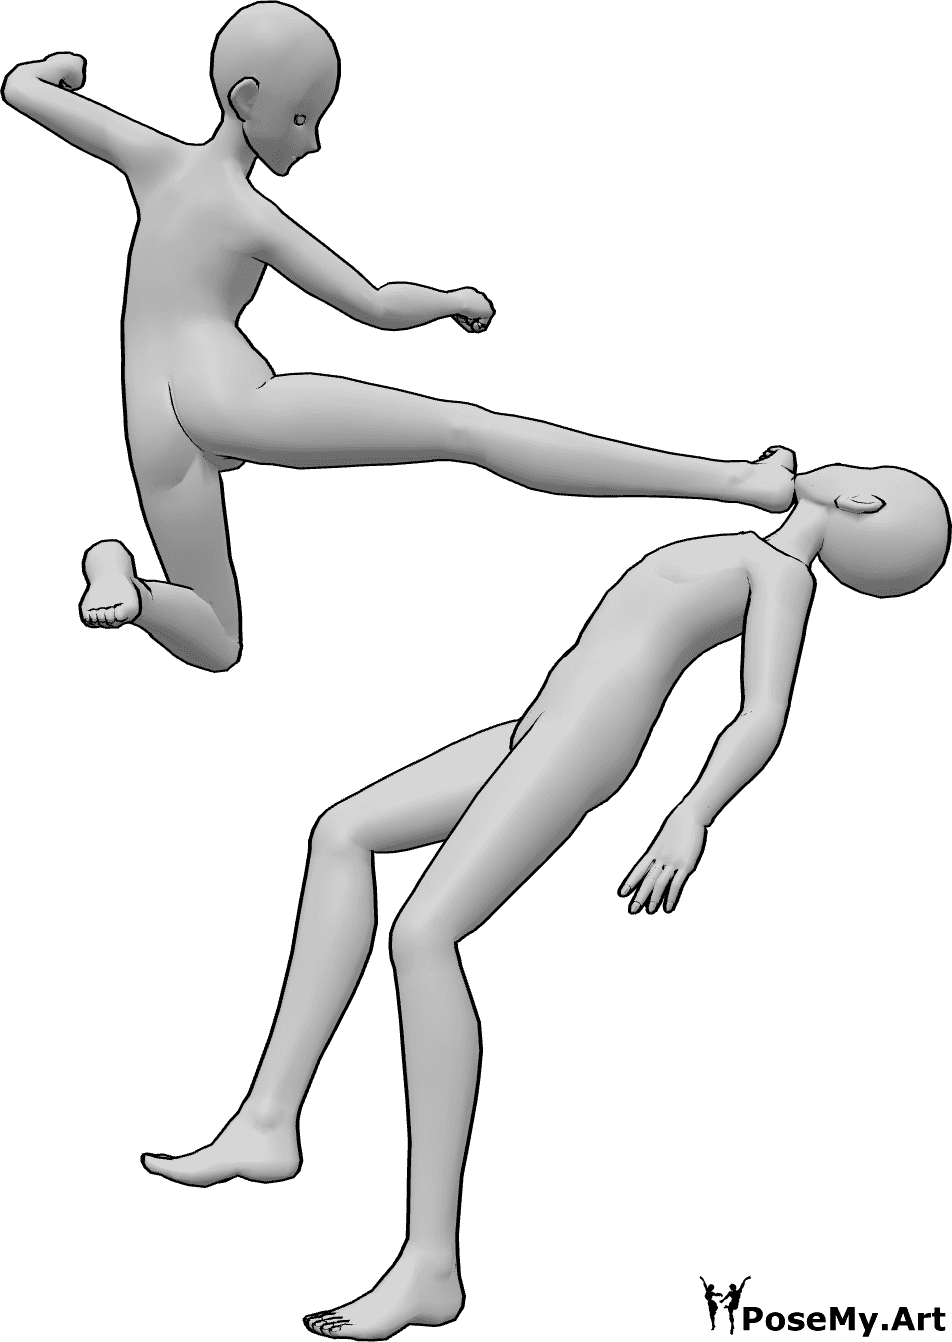 Référence des poses- Pose d'attaque du coup de pied de tête - Un homme blanc attaque l'autre homme, lui donnant des coups de pied à la tête.